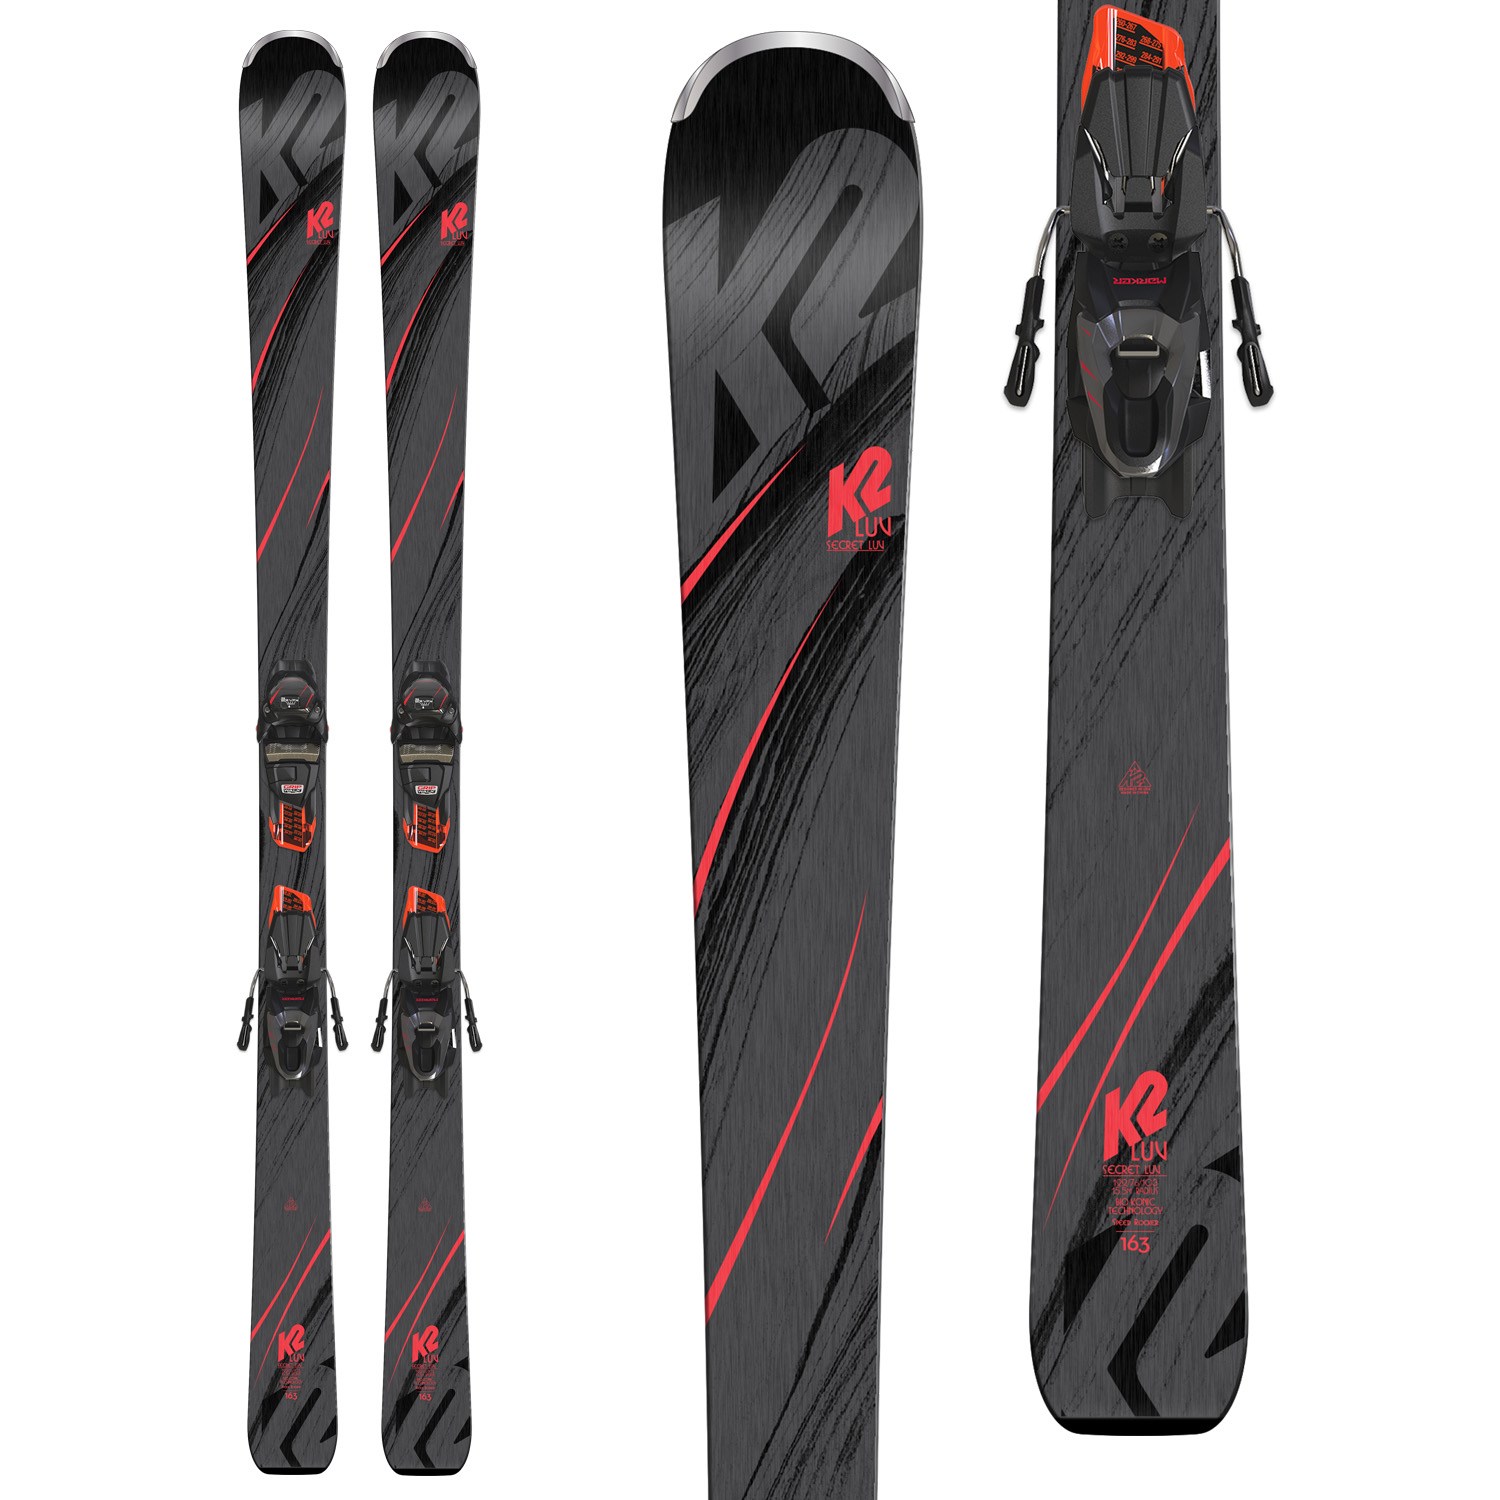 2019 K2 Secret Luv ladies skis NEW! with system bindings 